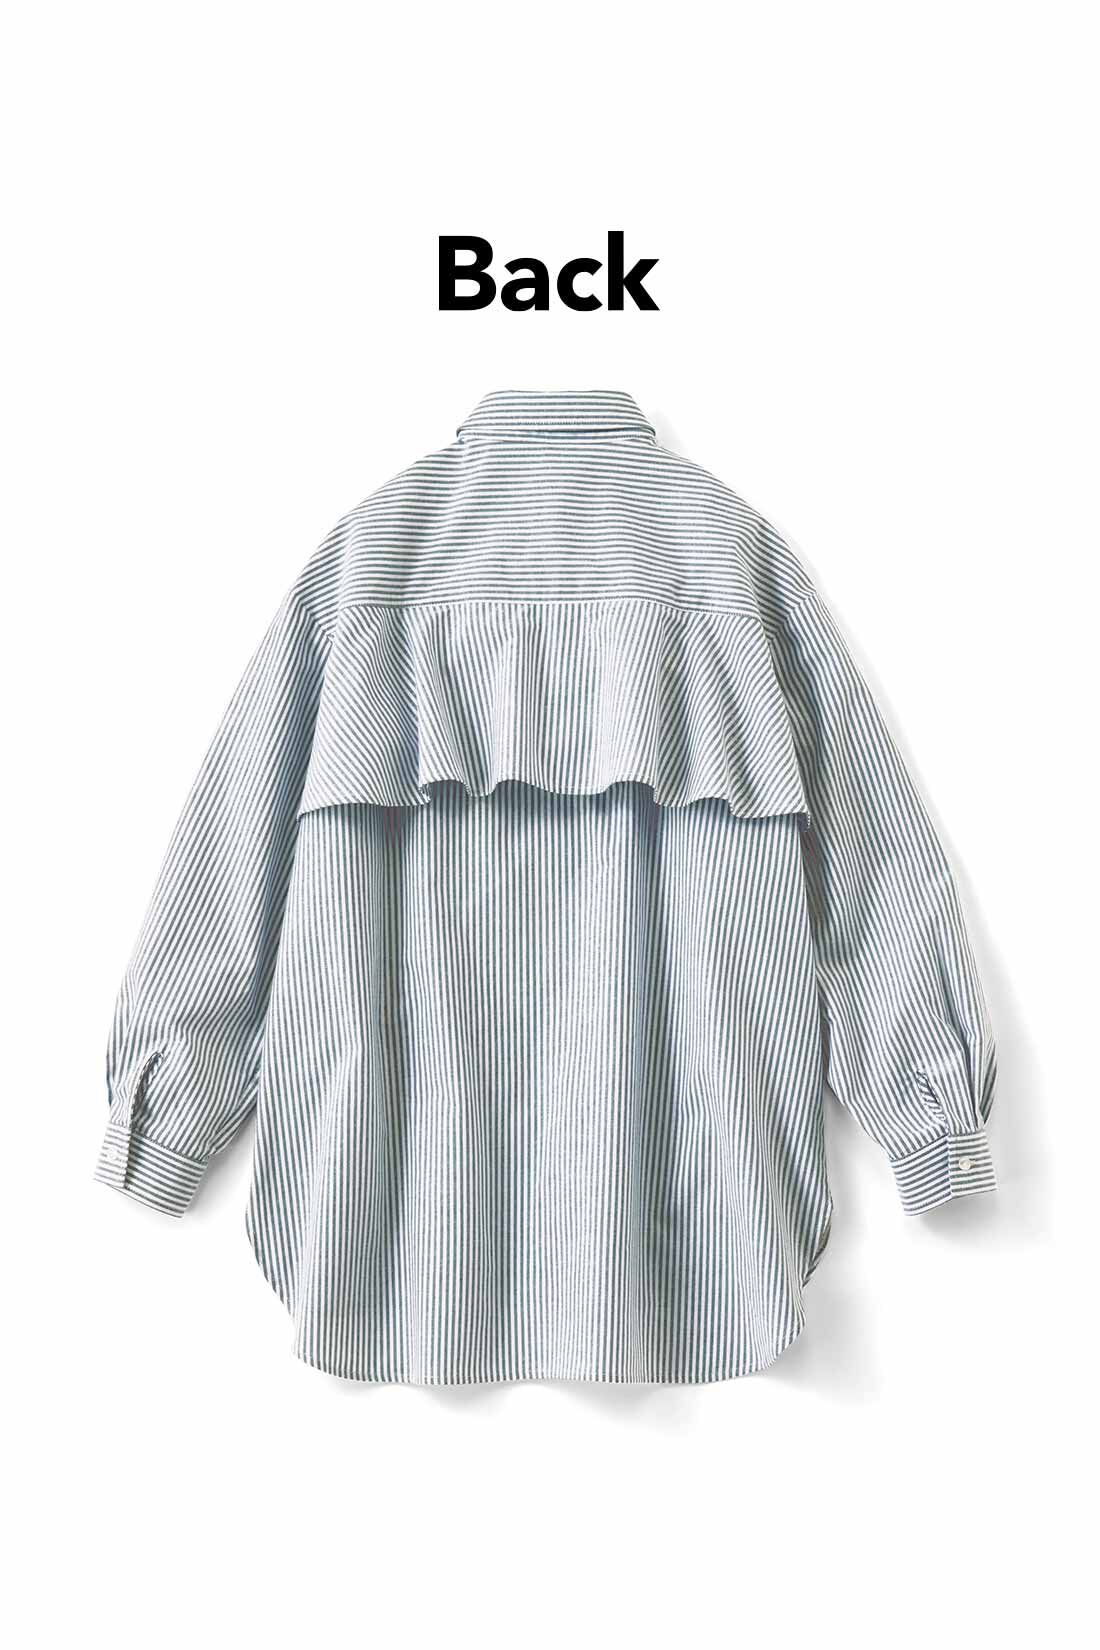 IEDIT|IEDIT[イディット]　バックフレアーデザインがきいた オックスフォード素材のこなれ見えシャツ〈ブルー〉|バックフレアーで後ろ姿に女らしさをプラス。